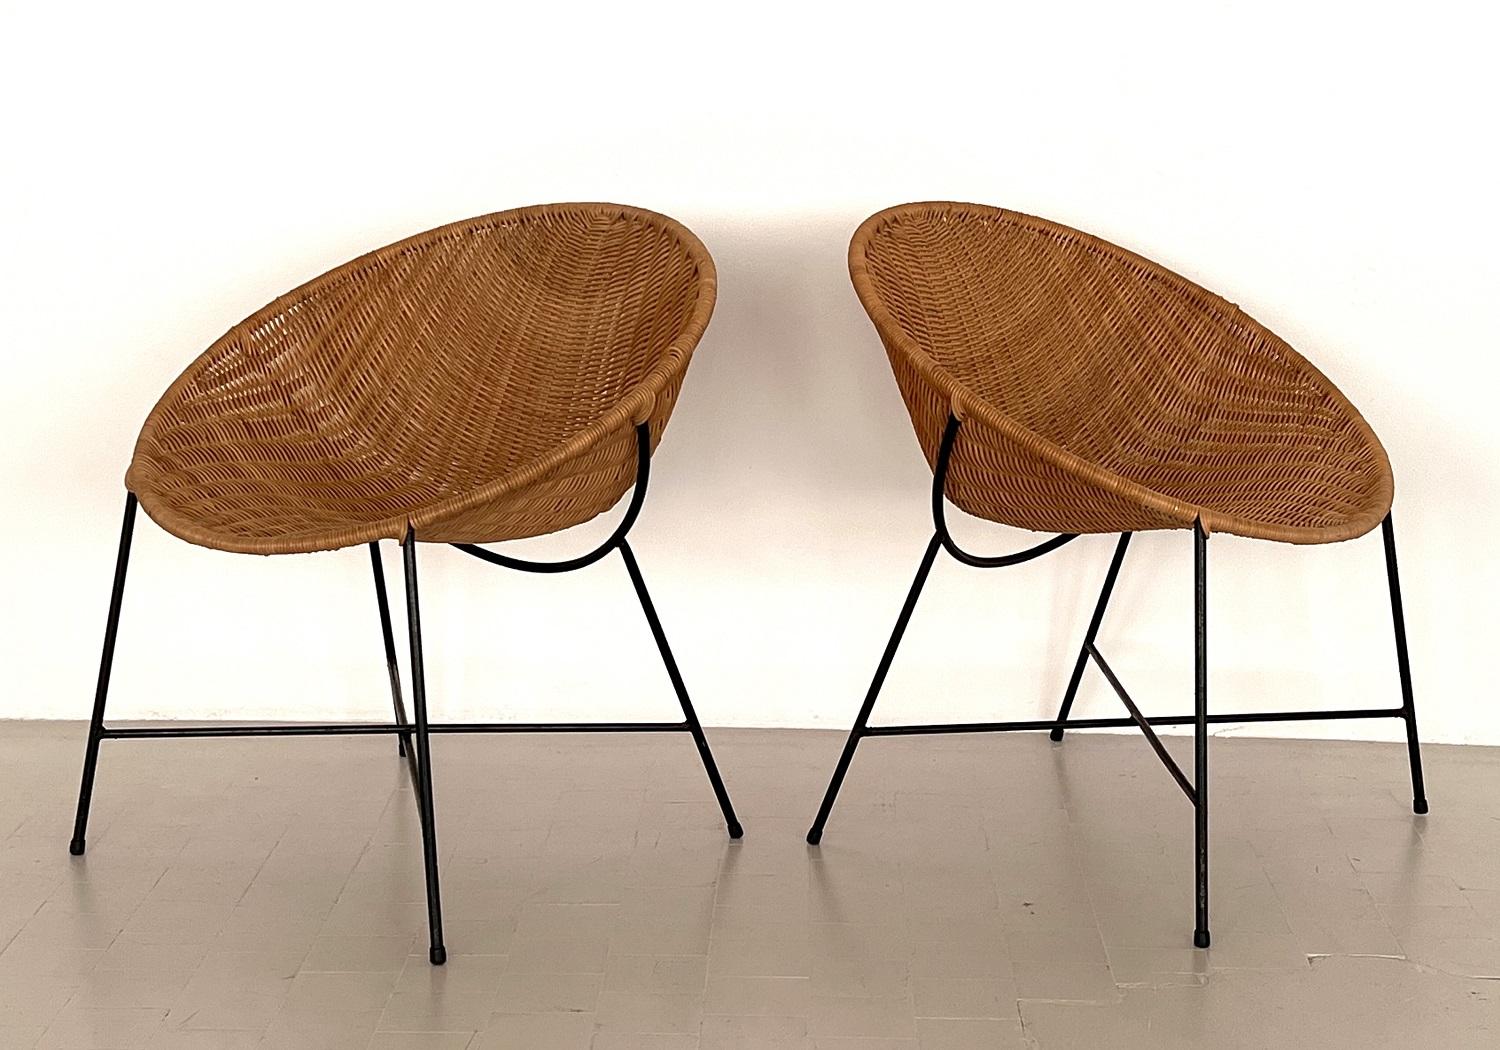 Magnifique paire de chaises longues en rotin avec base en métal.
Les sièges en rotin sont en presque excellent état vintage, sans aucun défaut, et en merveilleuse exécution sèche et propre.
Les bases métalliques sont peintes en noir et sont